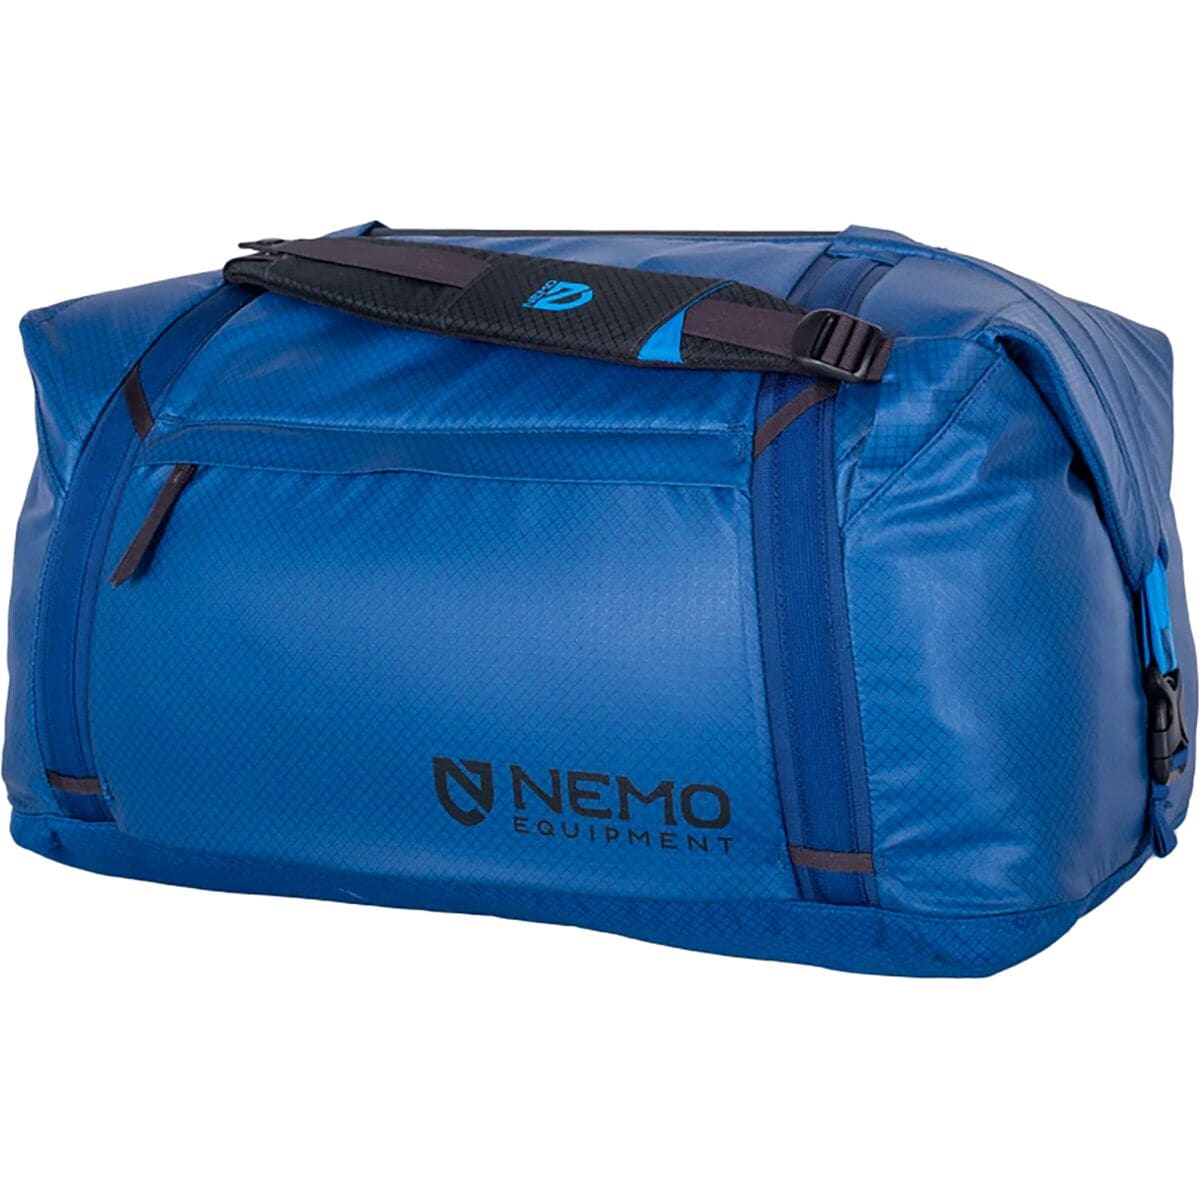 Двойная трансформируемая спортивная сумка объемом 70 л Nemo Equipment Inc., цвет lake